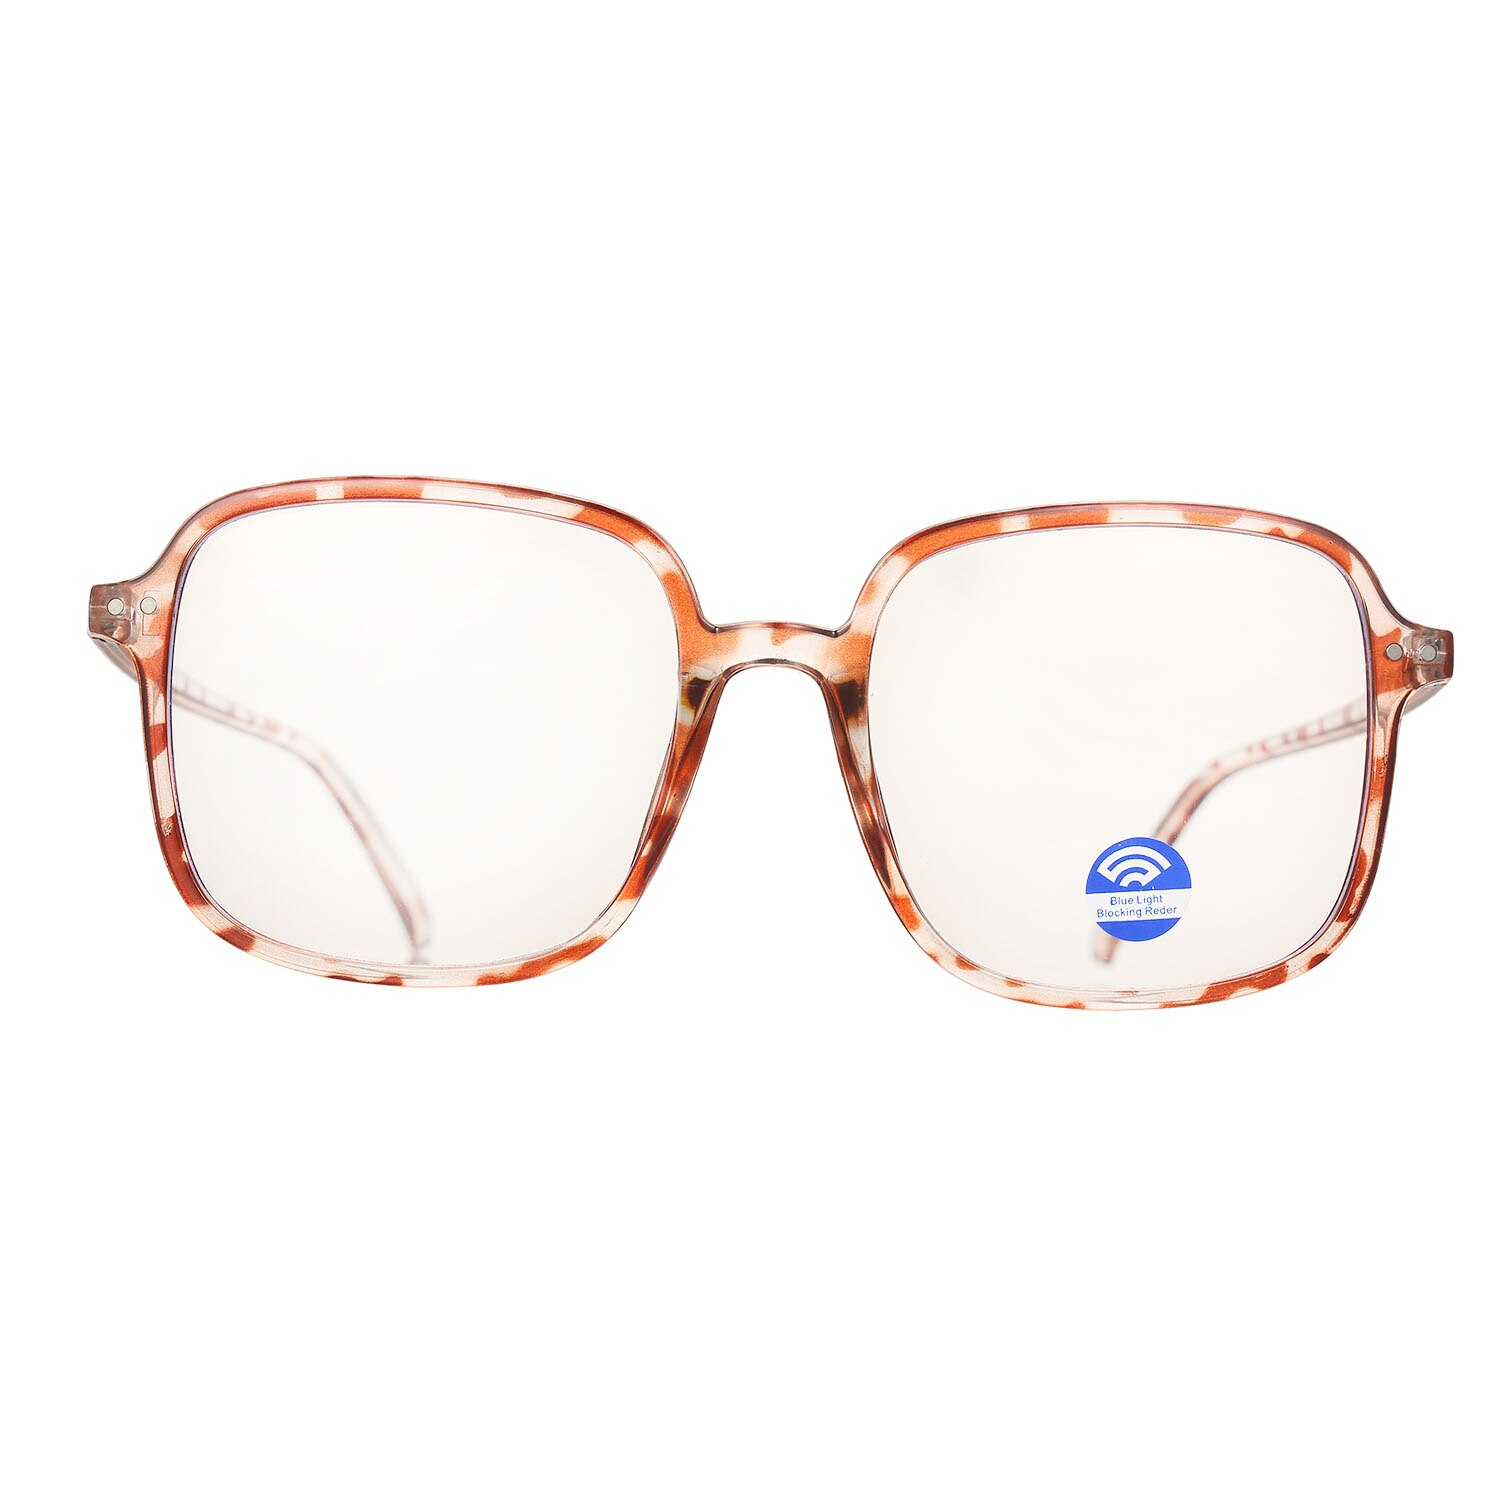 Unisex briller anti-blå lys briller ultra lys firkantede rammer briller computer briller fleksible briller læsebriller: Sort